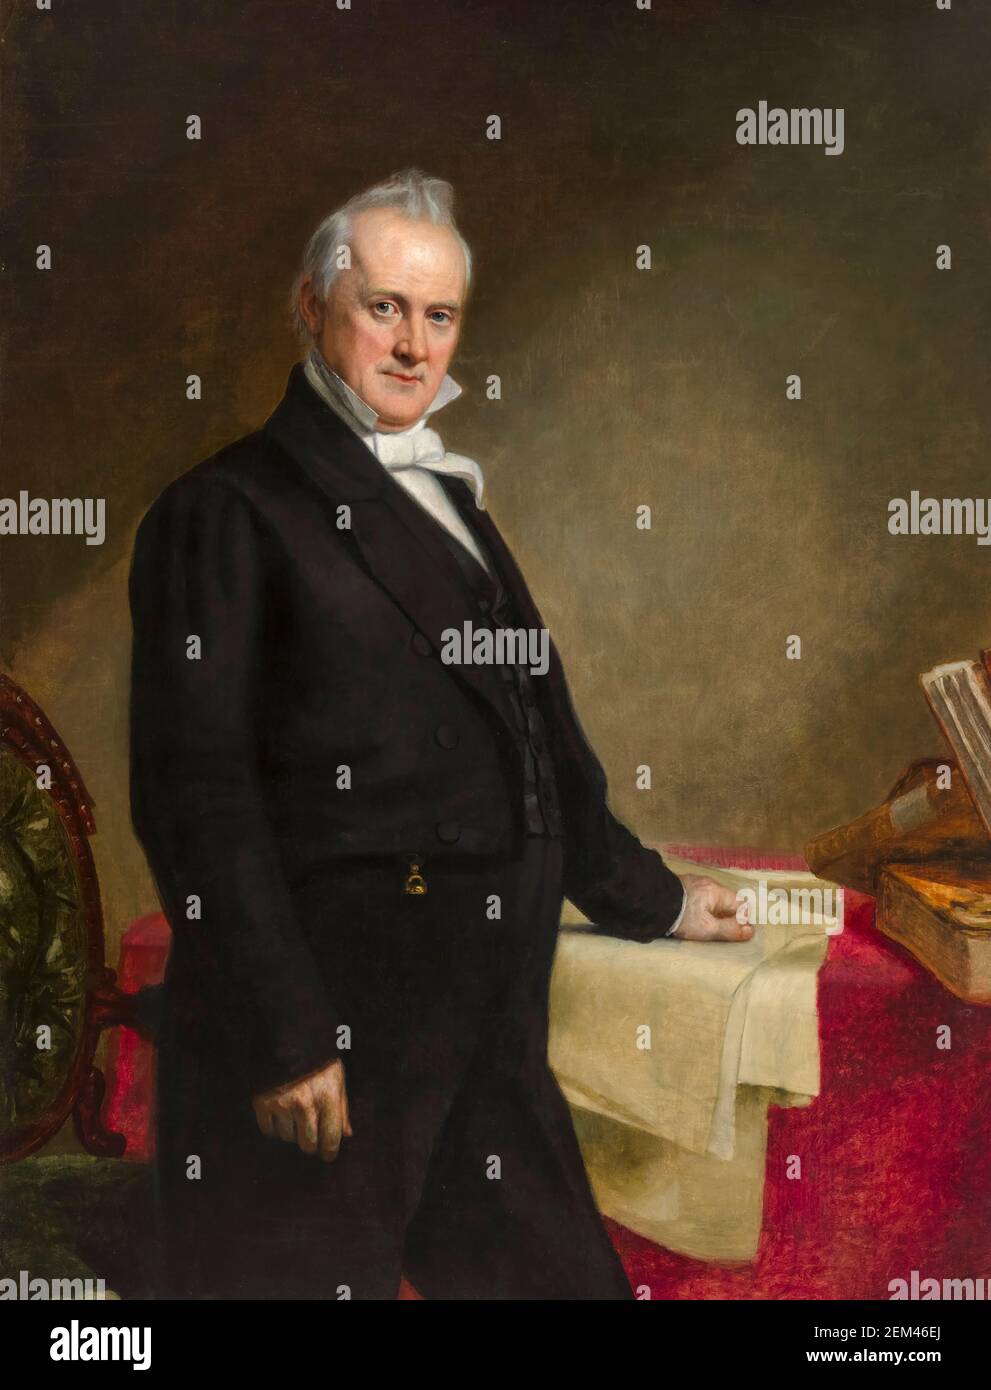 James Buchanan (1791-1868), 15e président des États-Unis, portrait peint par George Peter Alexander Healy, 1859 Banque D'Images